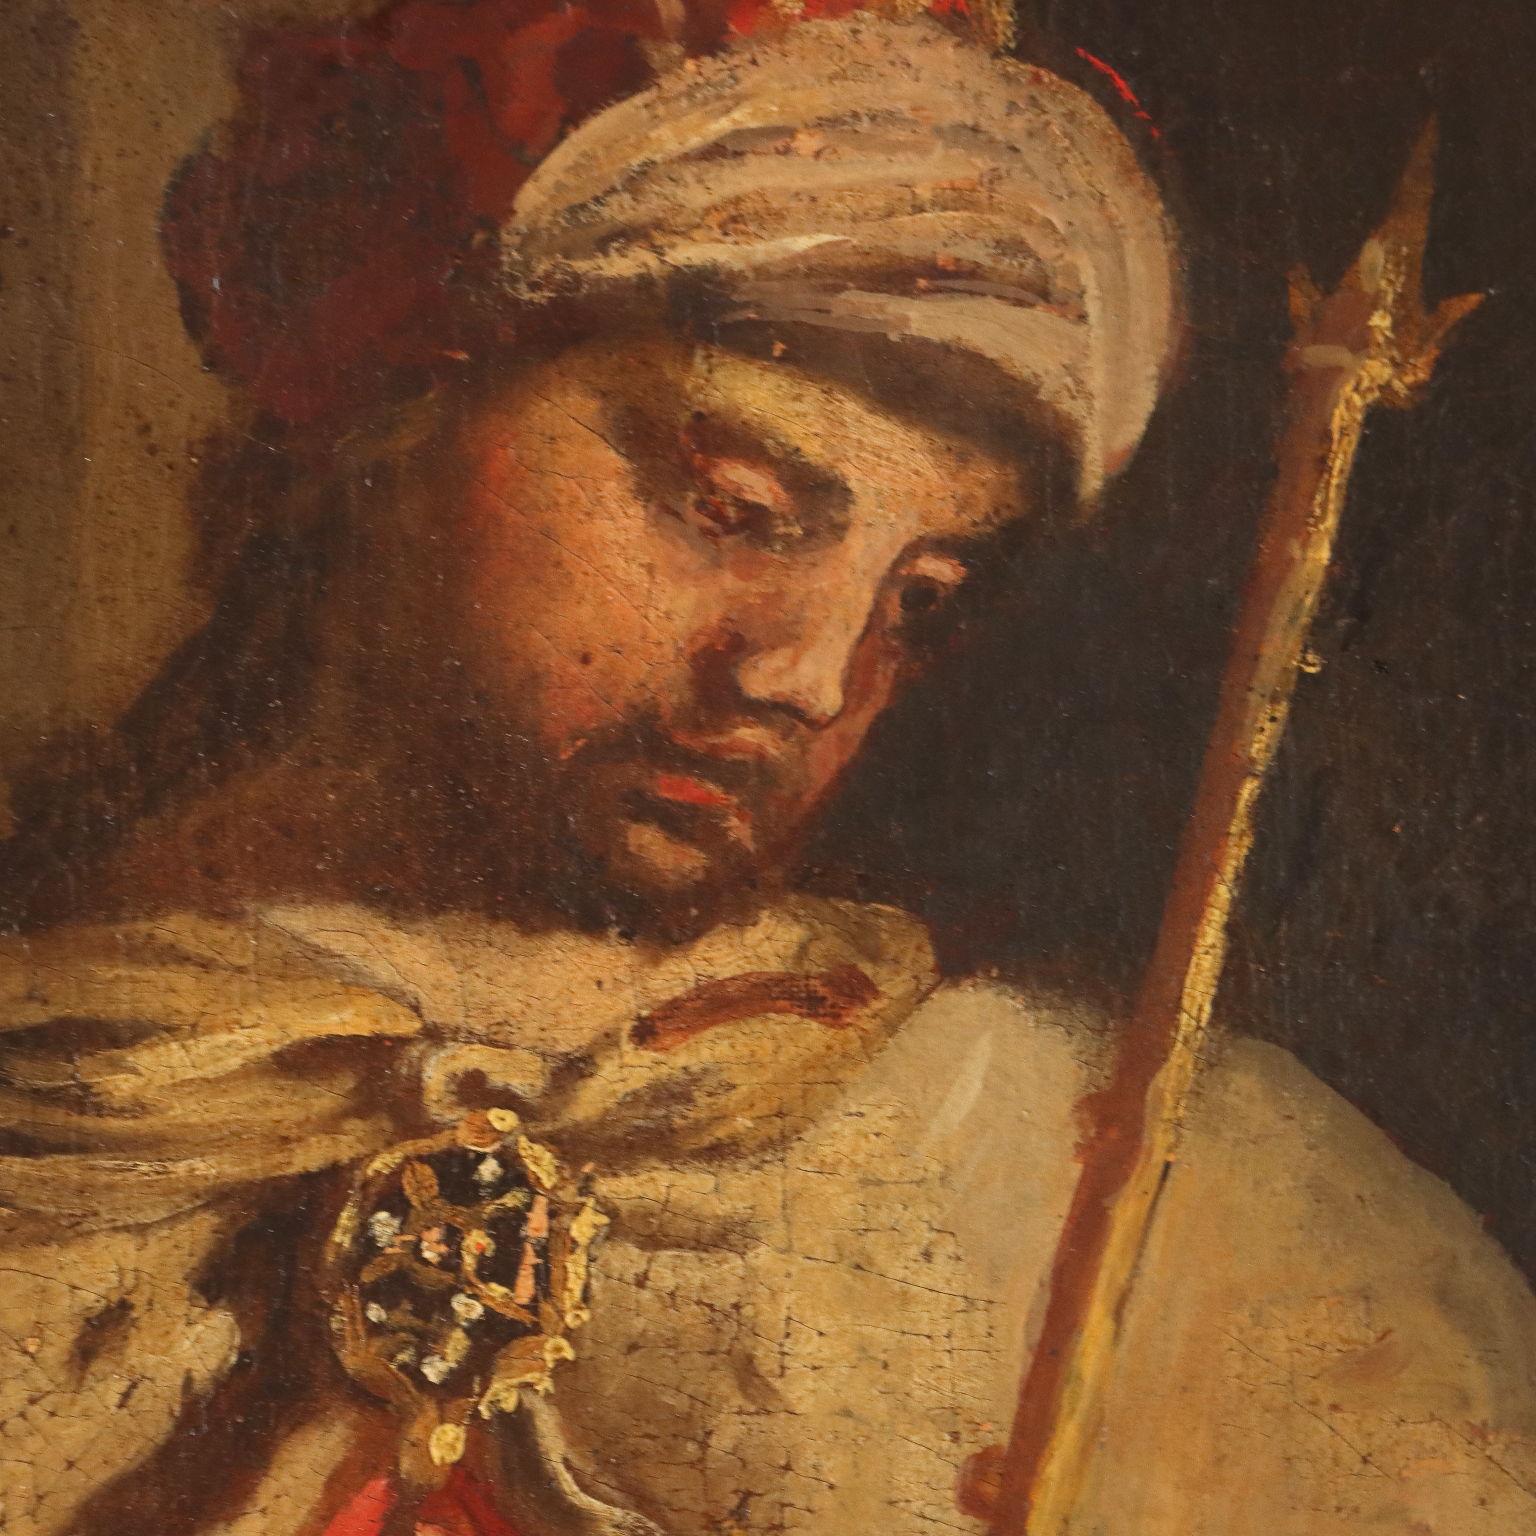 Öl auf Leinwand. Norditalienische Schule des 17. Jahrhunderts.
Das große Gemälde thematisiert ein bekanntes Thema des Alten Testaments, den Reichtum König Salomos, von dem im ersten Buch der Könige berichtet wird: 